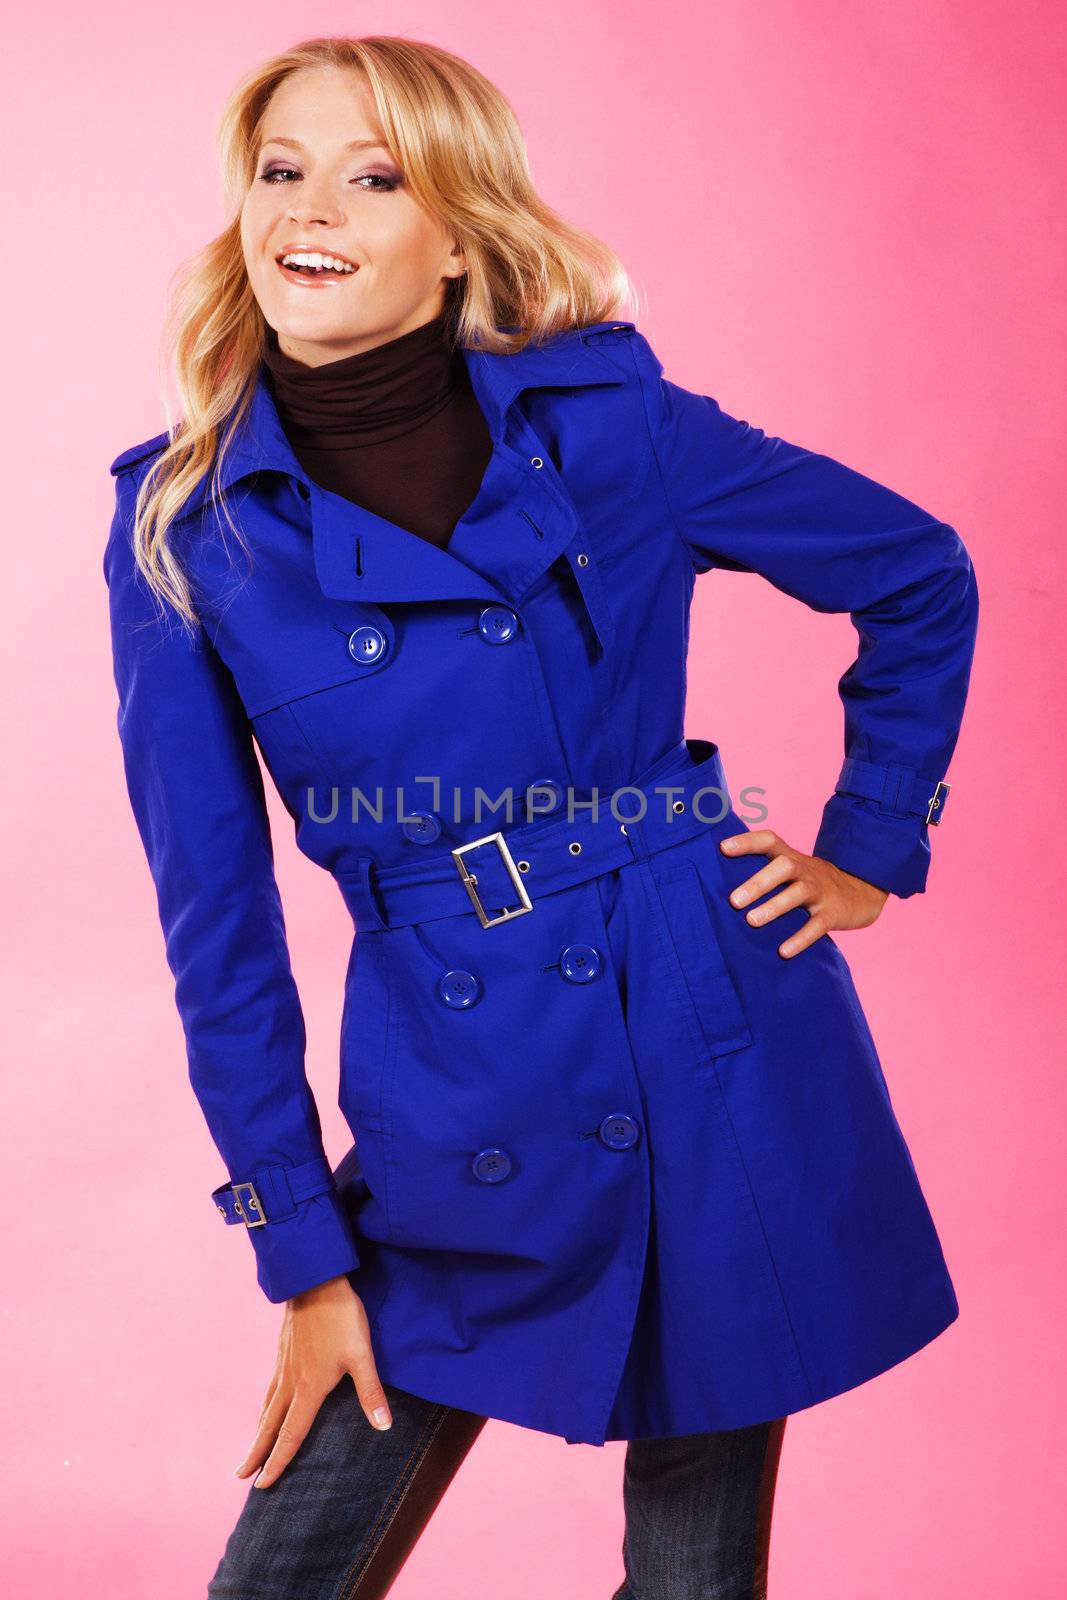 Lovely woman in a blue coat by Gdolgikh